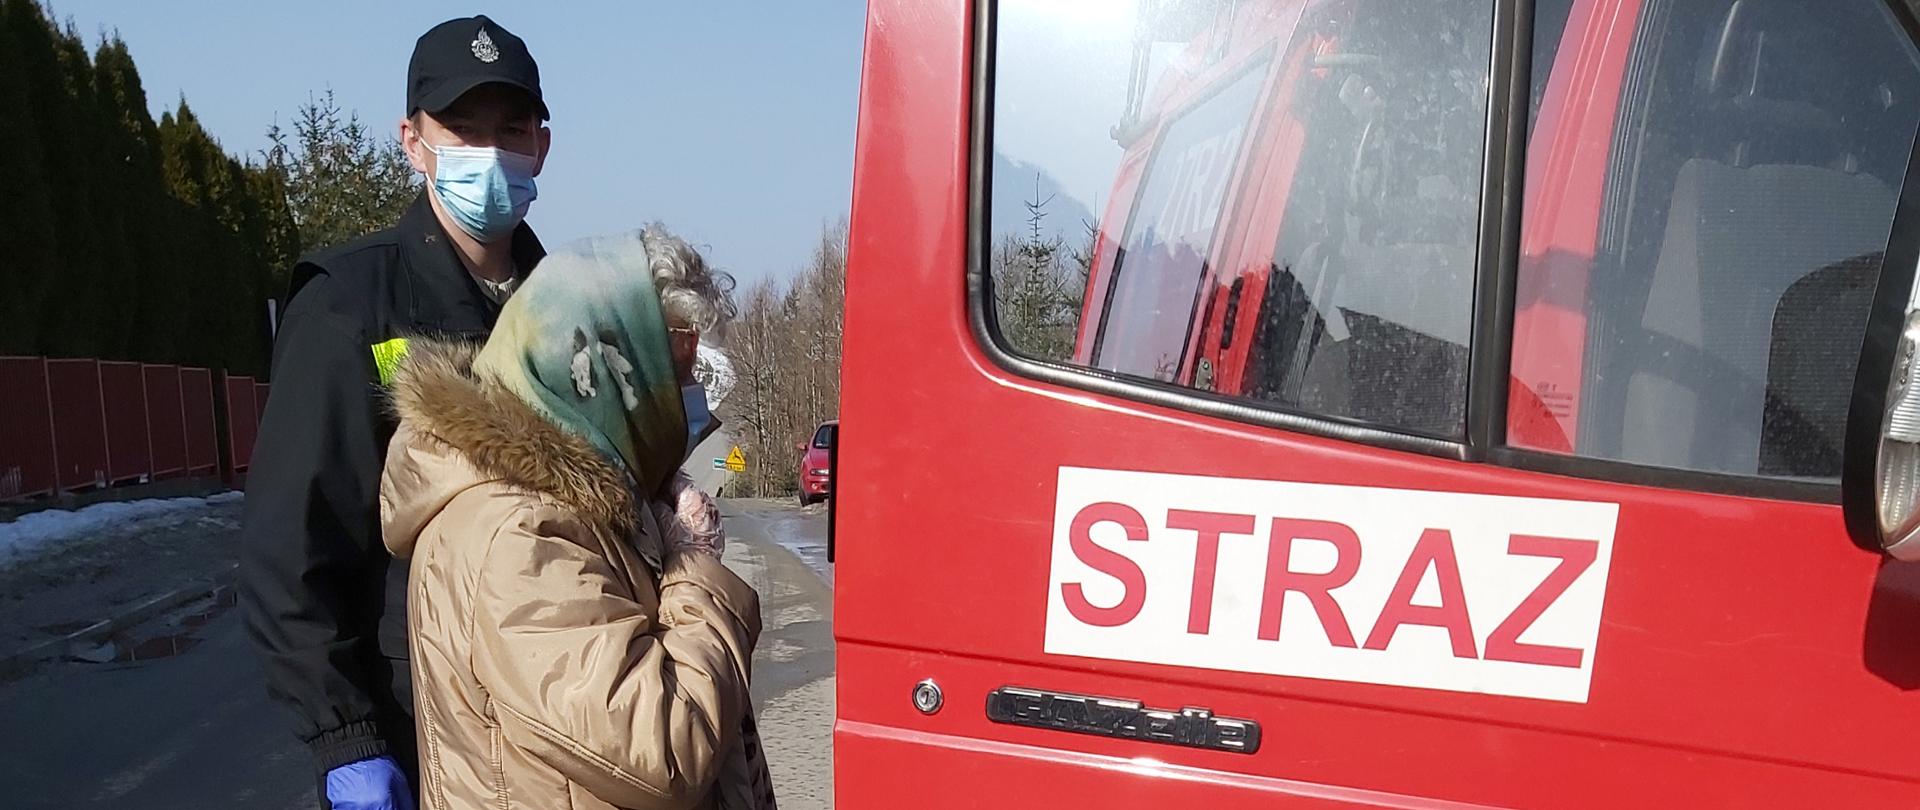 Na zdjęciu widnieje strażak w umundurowaniu koszarowym, rękawiczkach i masce oraz kobieta, która udaje się na szczepienie. Znajdują się przed otwartymi drzwiami samochodu pożarniczego typu bus z zamiarem wejścia do środka pojazdu.